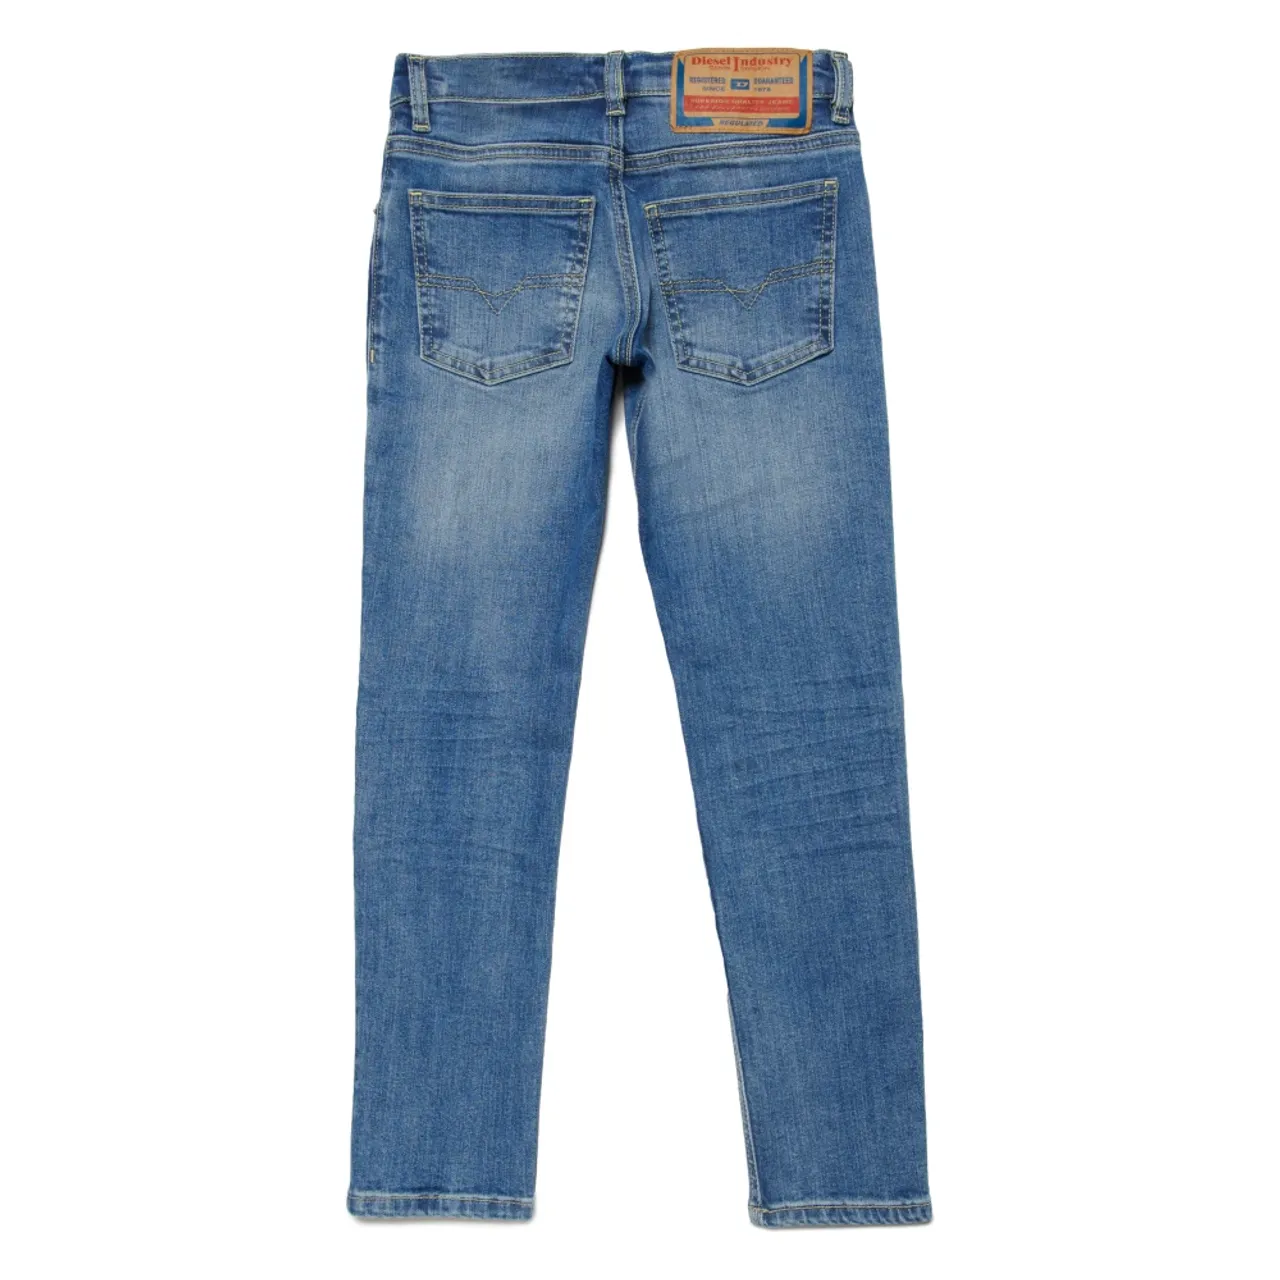 Leicht schattierte gerade Jeans - 1995 Diesel